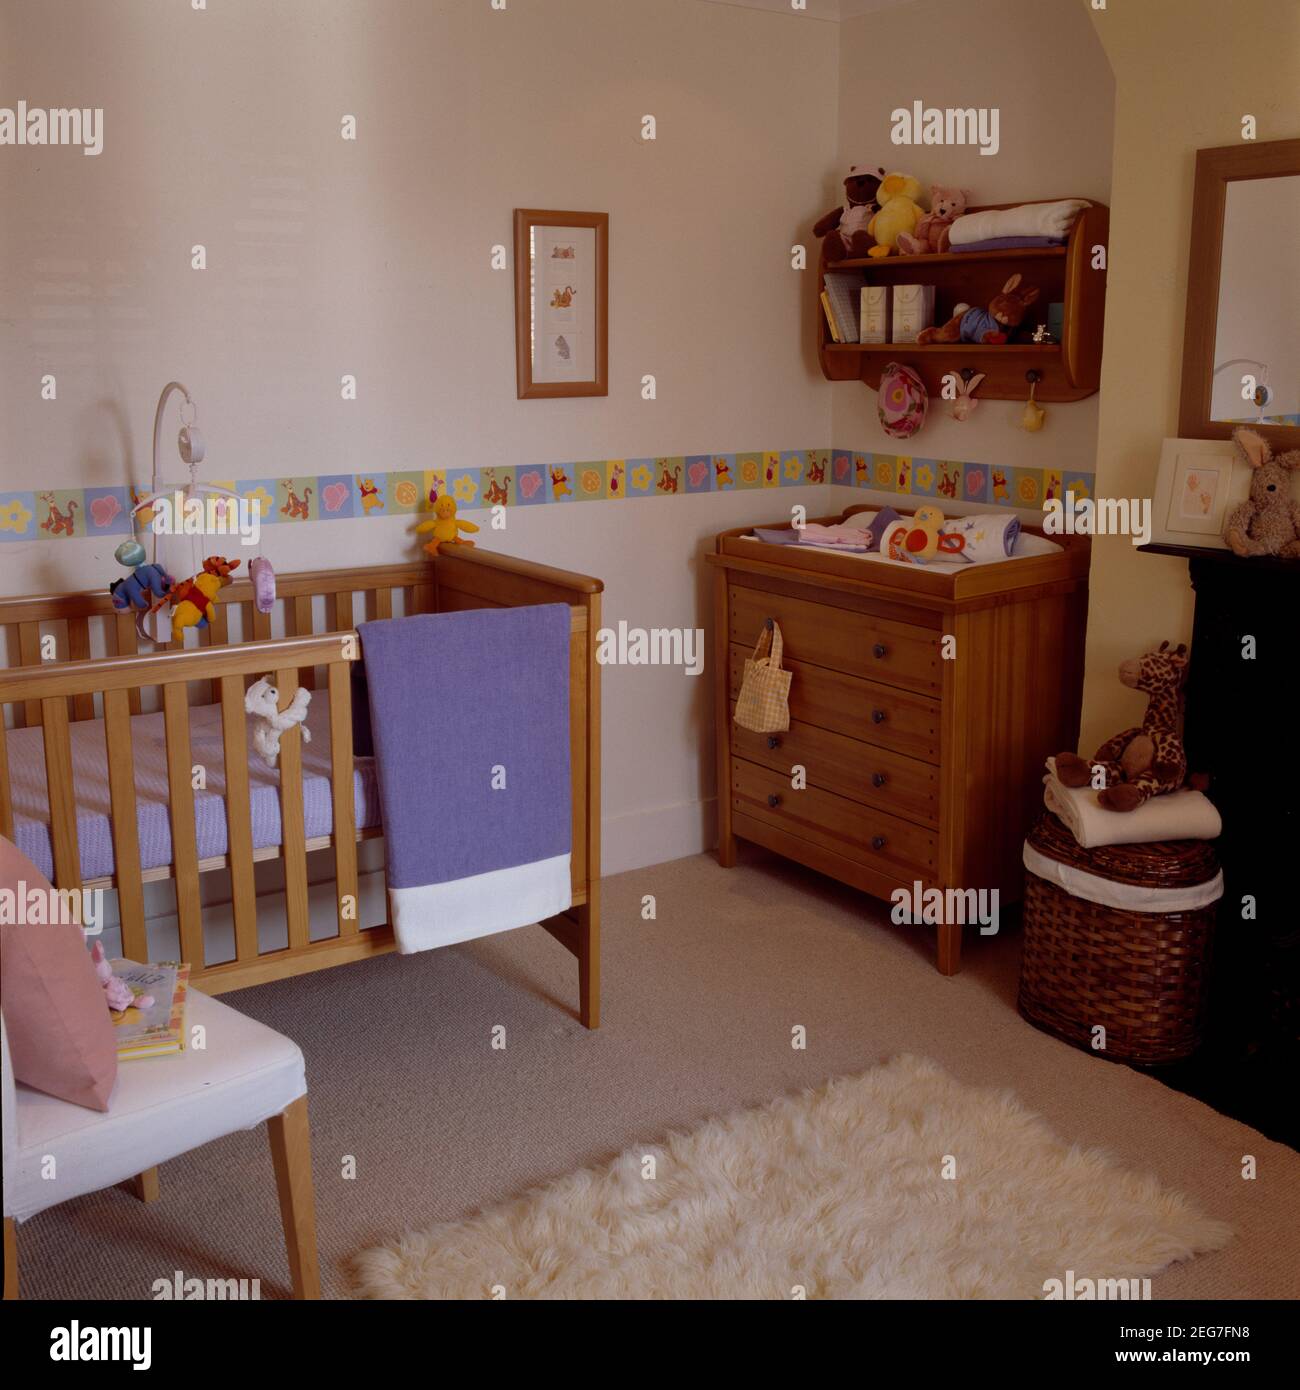 Lit bébé et coffre en bois dans la chambre des enfants avec dado décoratif bande Banque D'Images